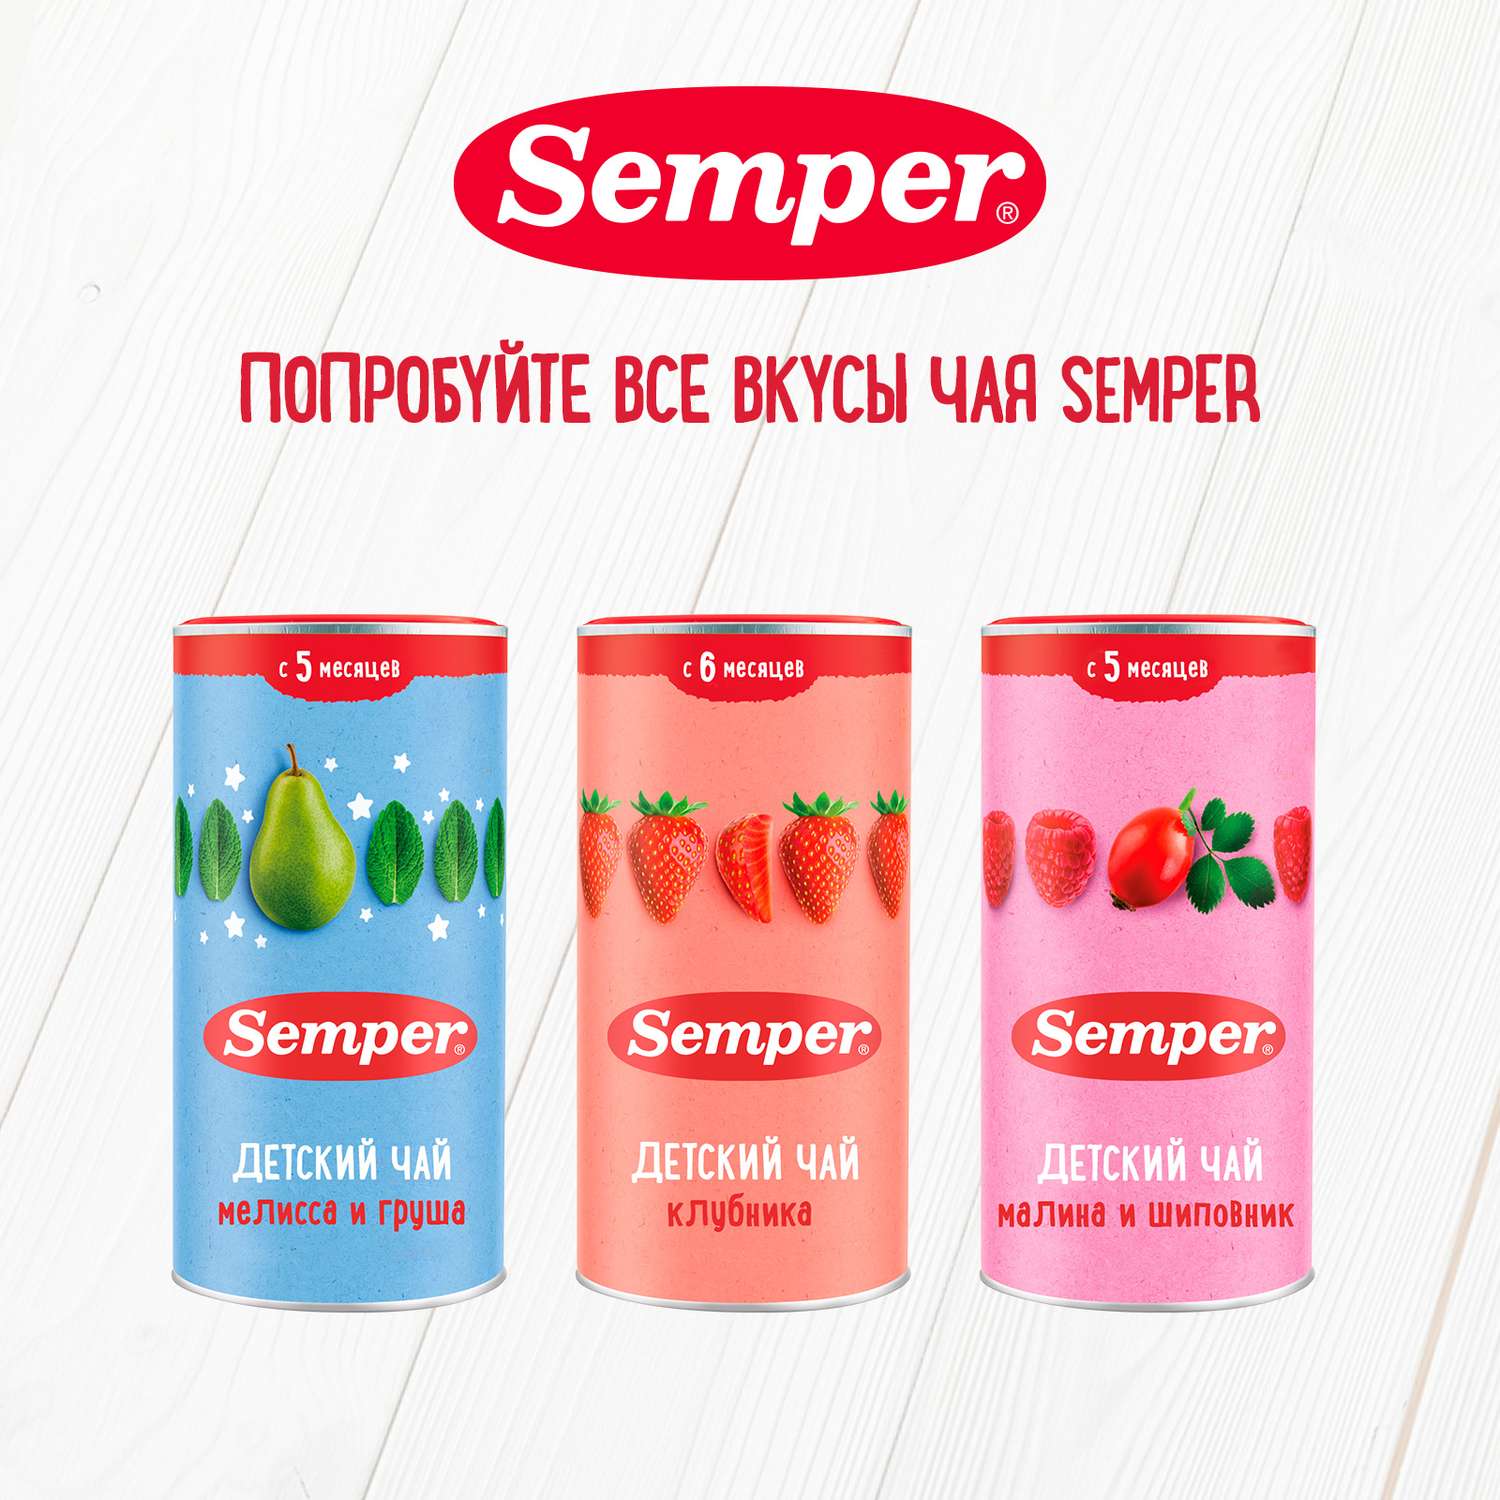 Чай Semper малина-шиповник гранулированный 200г с 5месяцев - фото 9